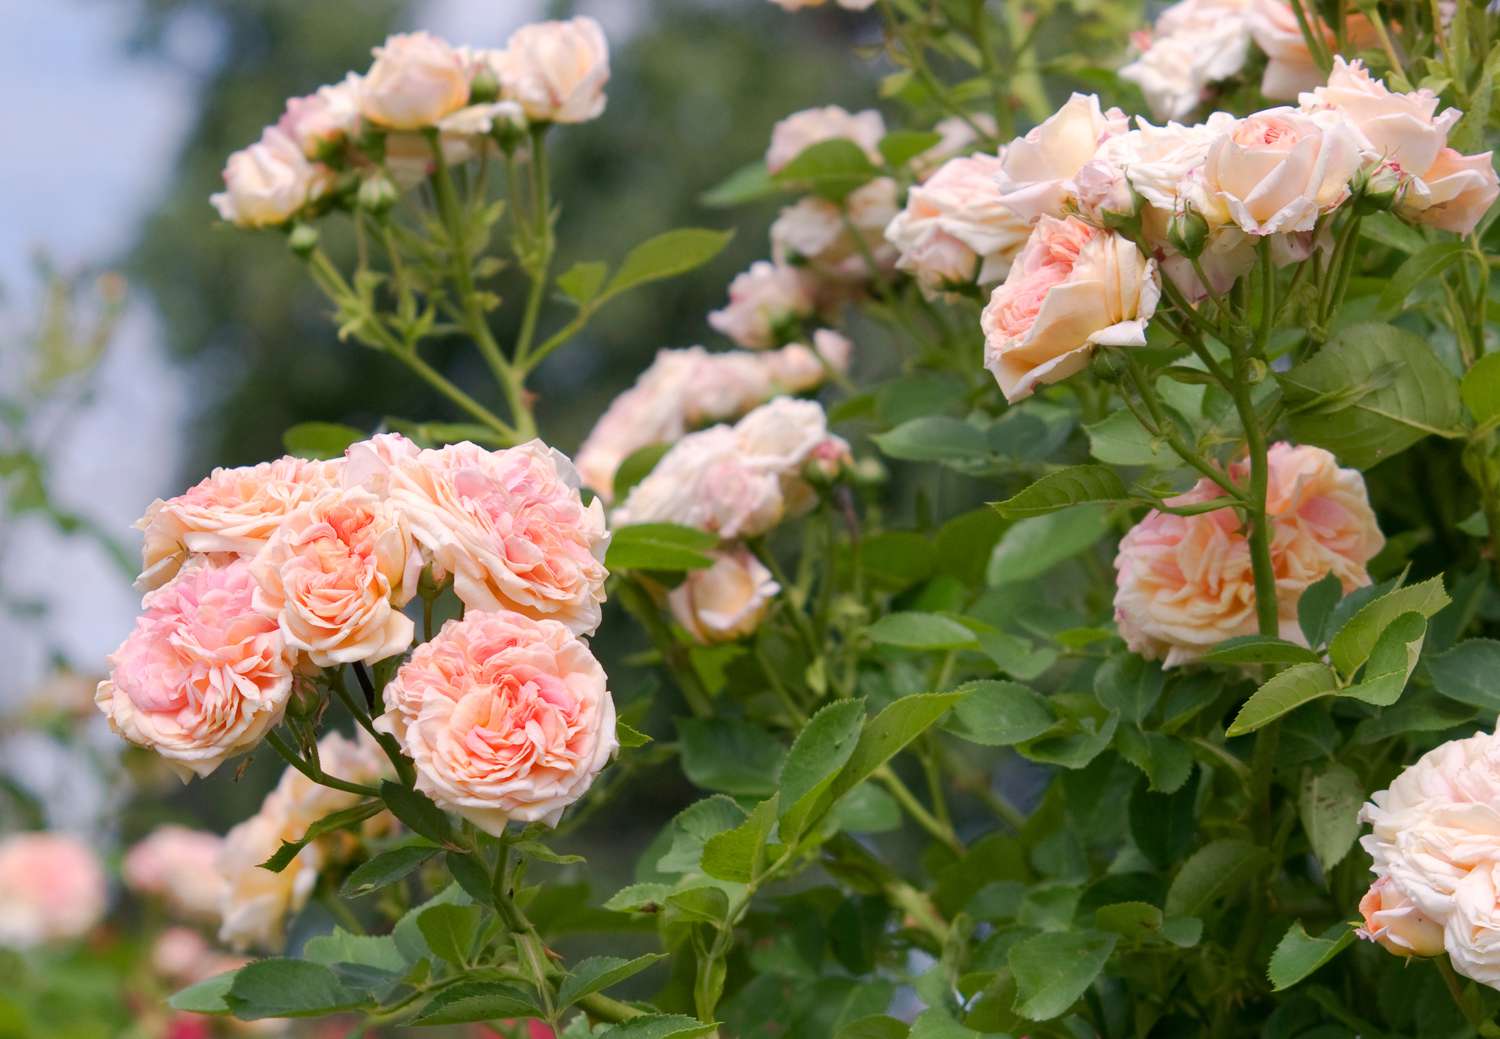 Rosen-Alchymist-Strauch mit kletternden hellrosa Blüten in Nahaufnahme 